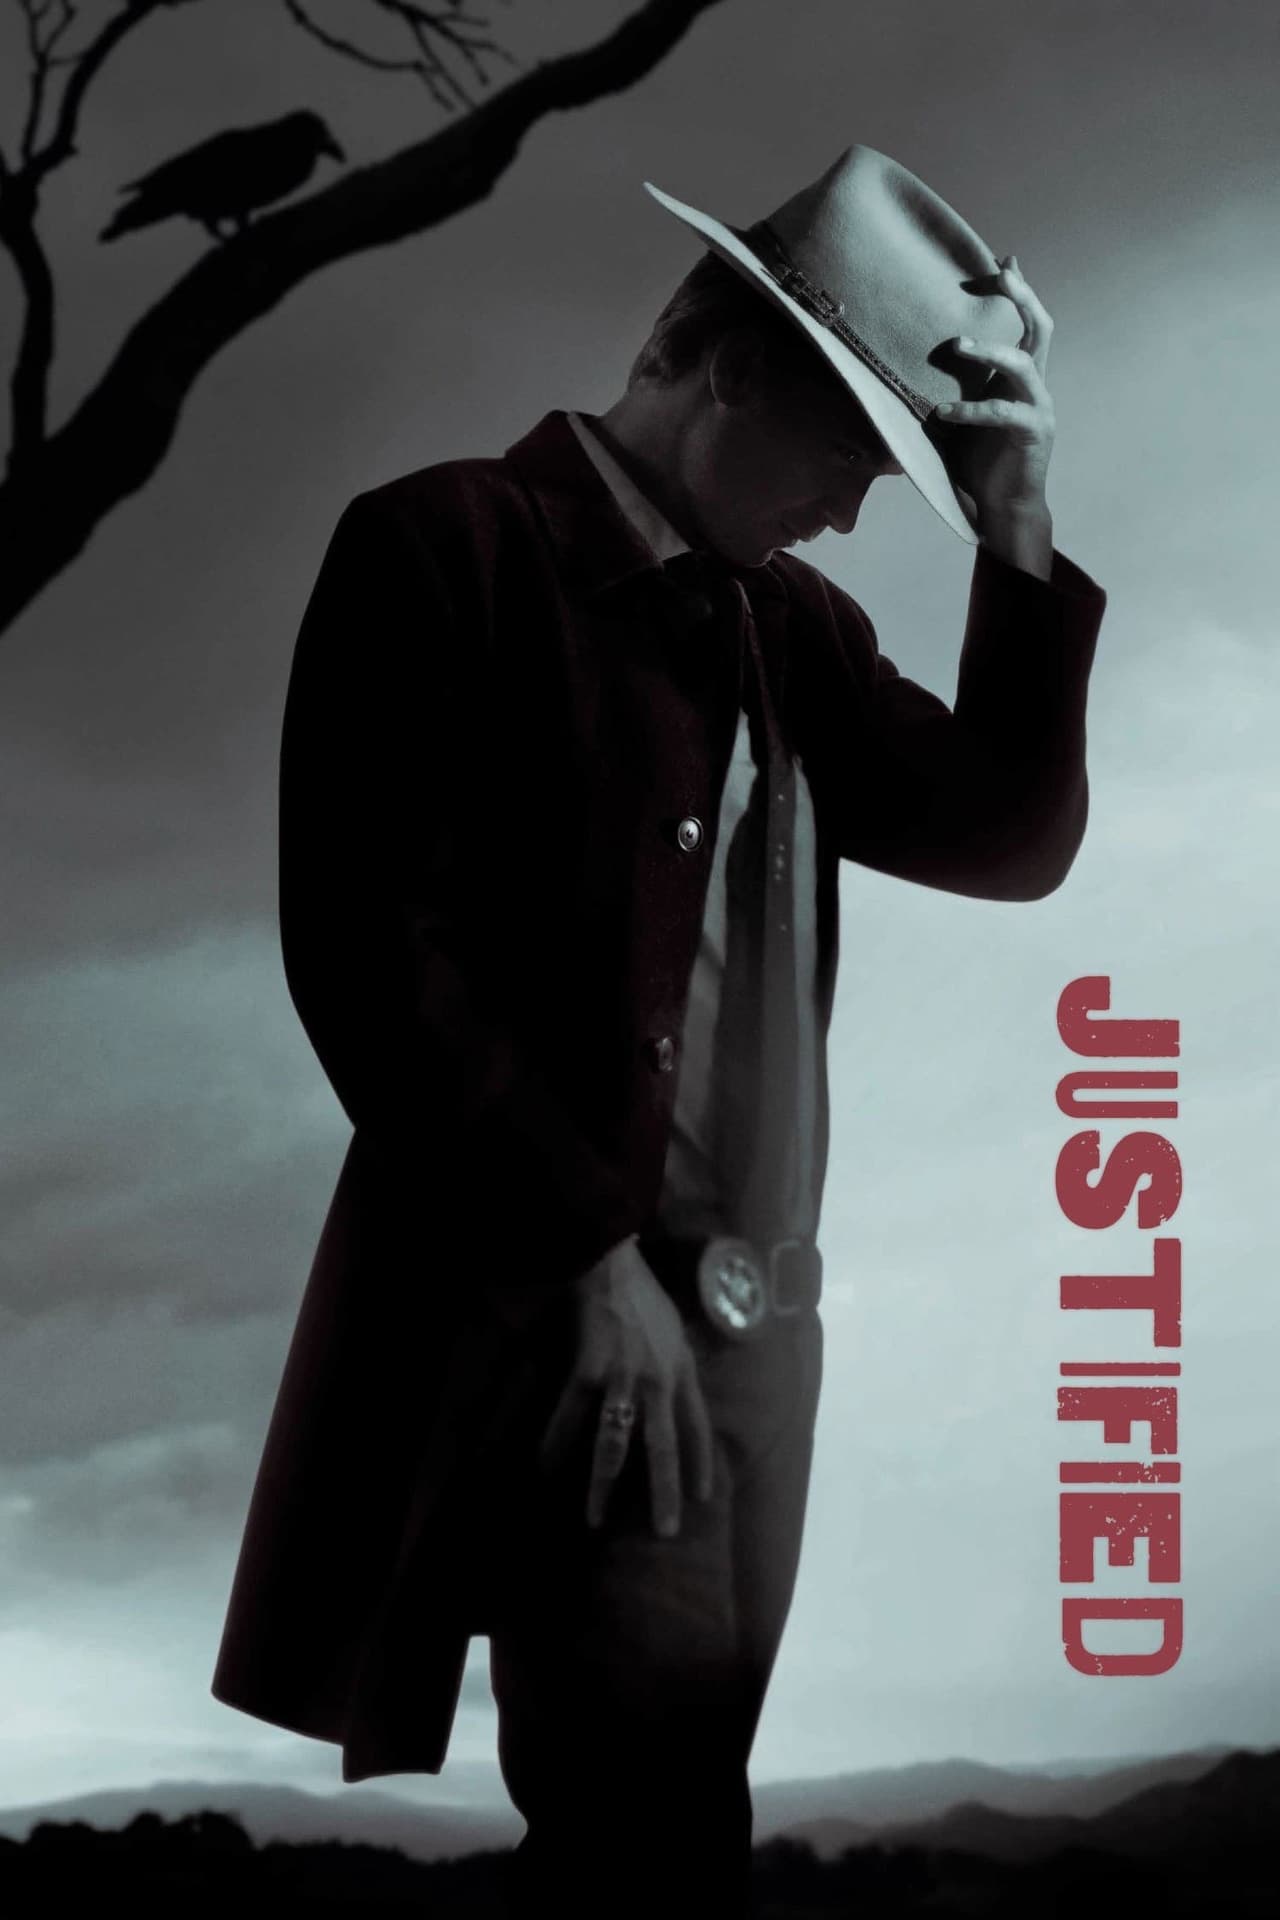 Justified (season 4)